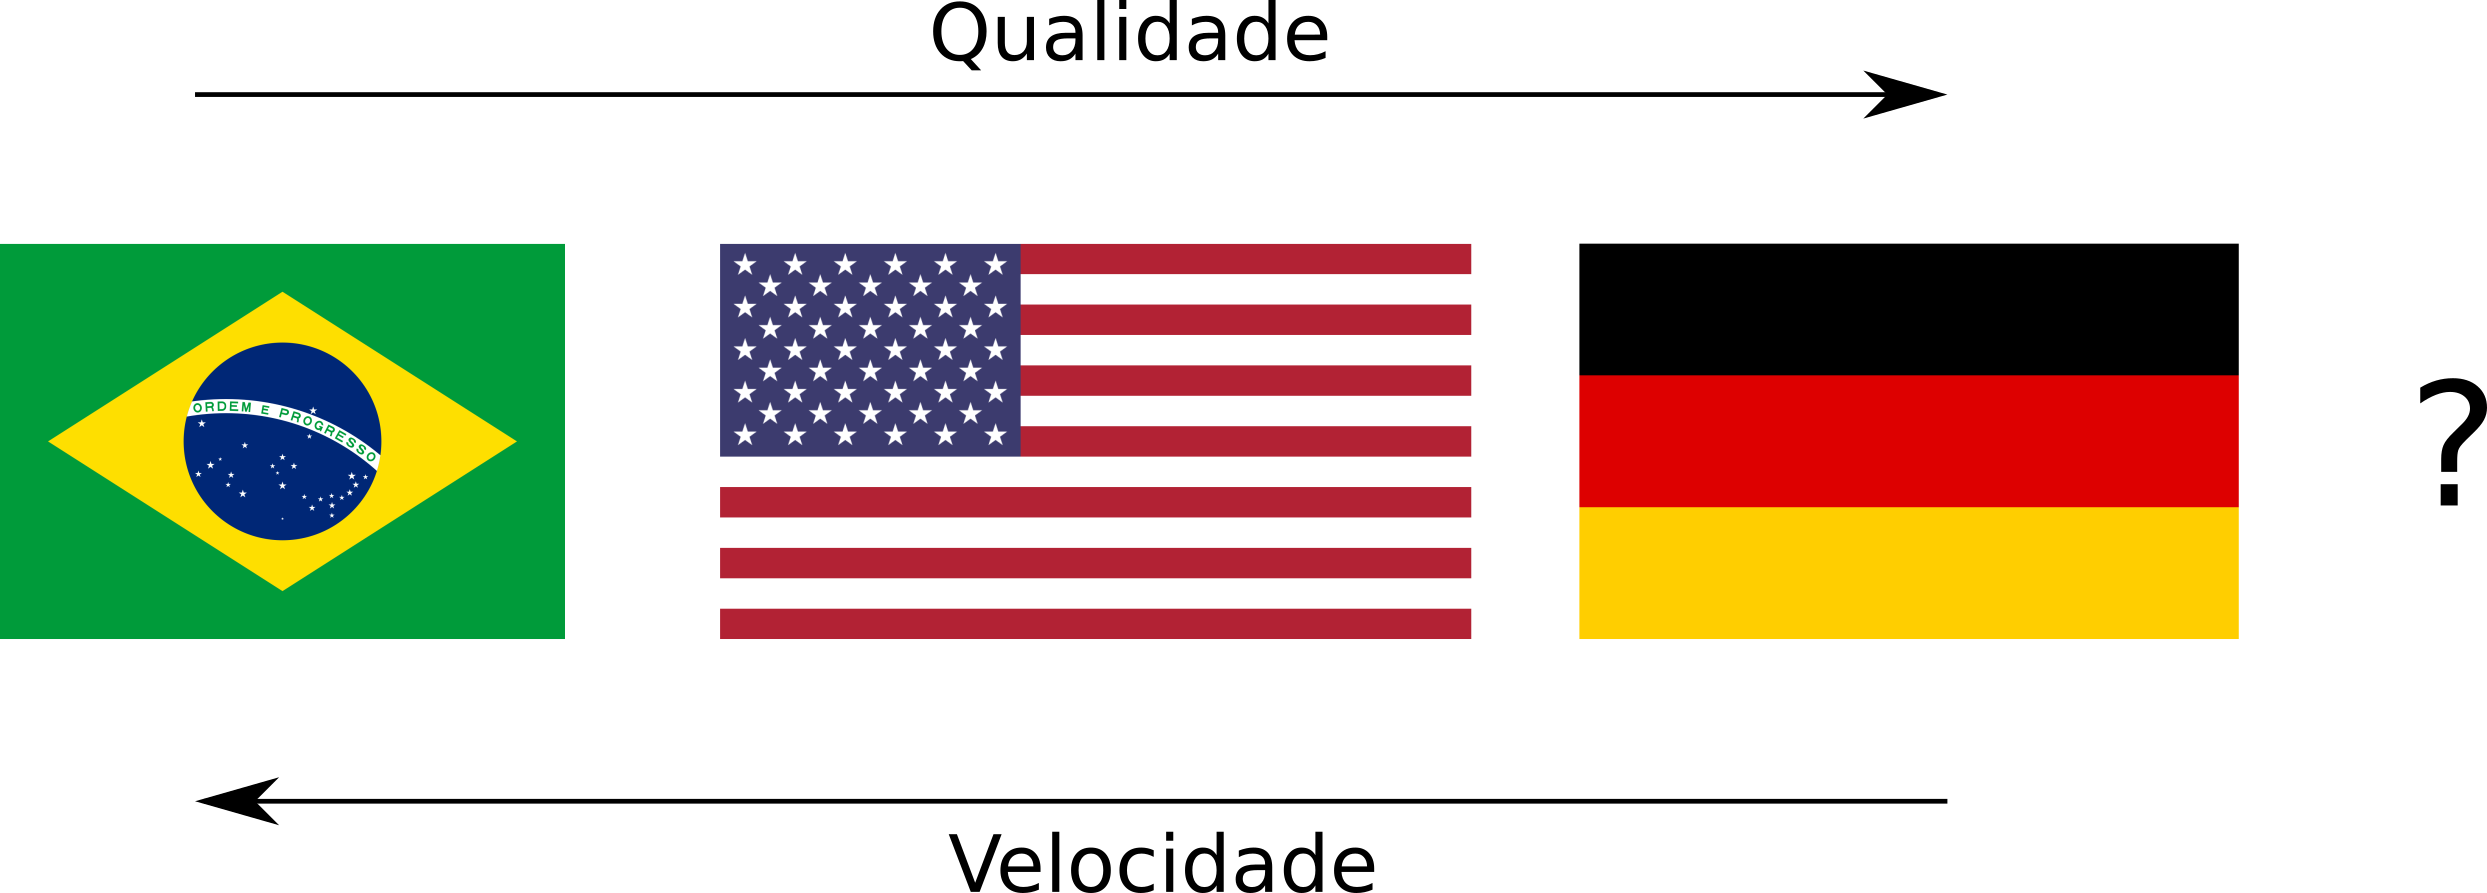 Em qualidade: Alemanha > EUA > Brasil. Em velocidade: Brasil > EUA > Alemanha